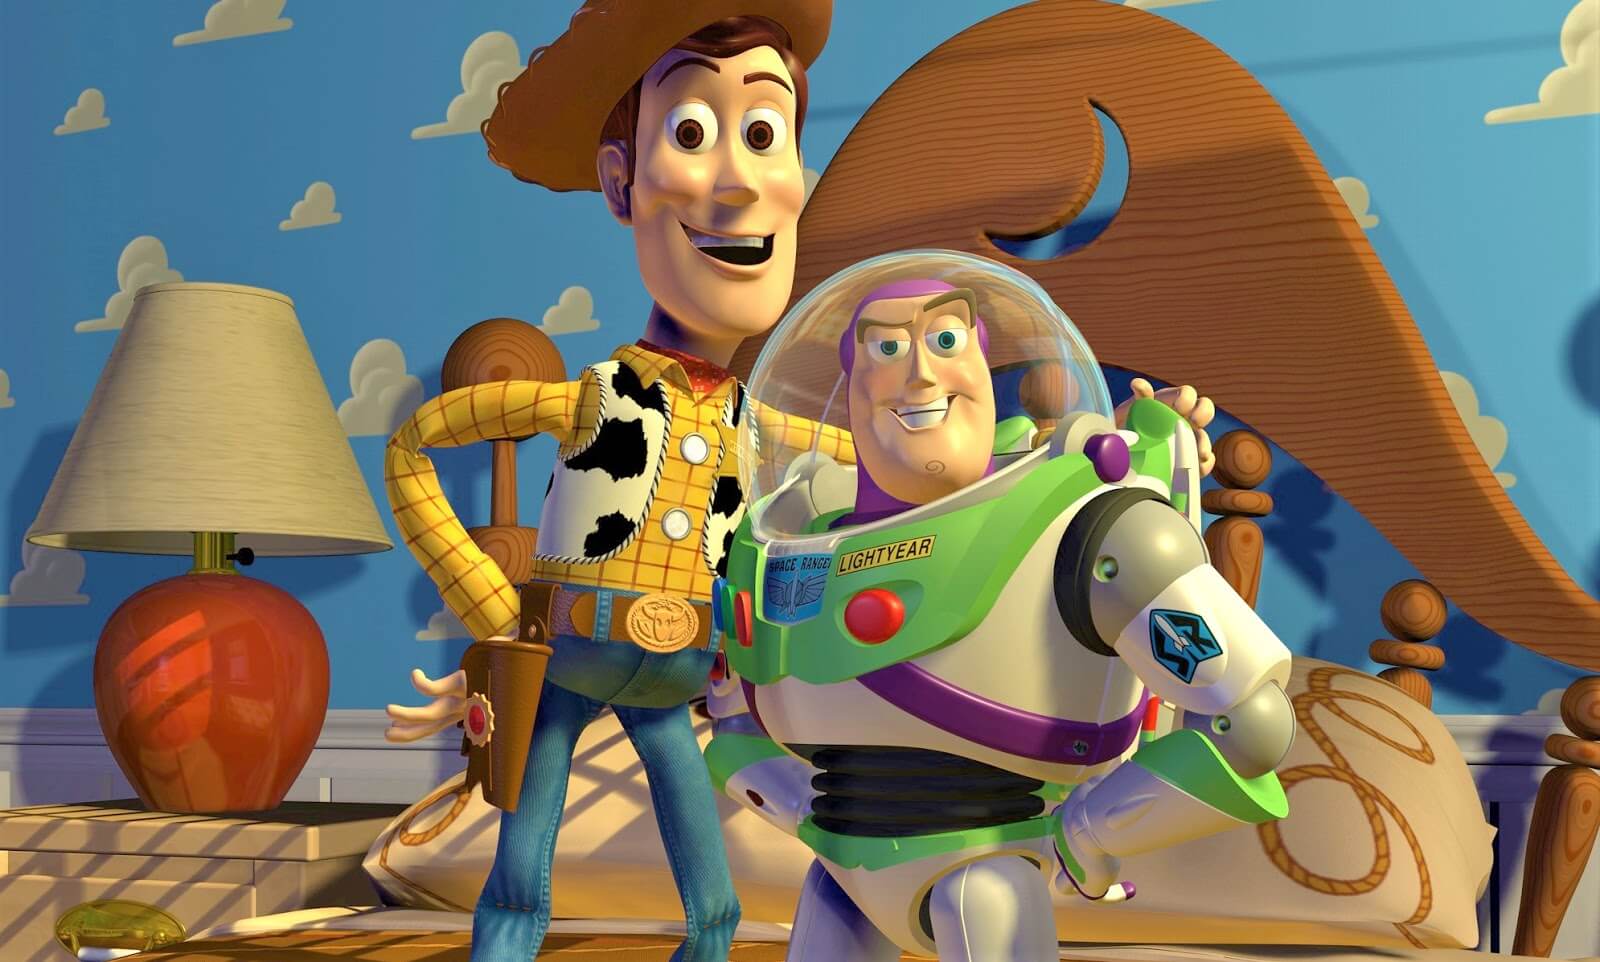 Em parte, o mundo precisa agradecer à Steve Jobs pela existência de 'Toy Story' (crédito: divulgação / Disney Pixar)